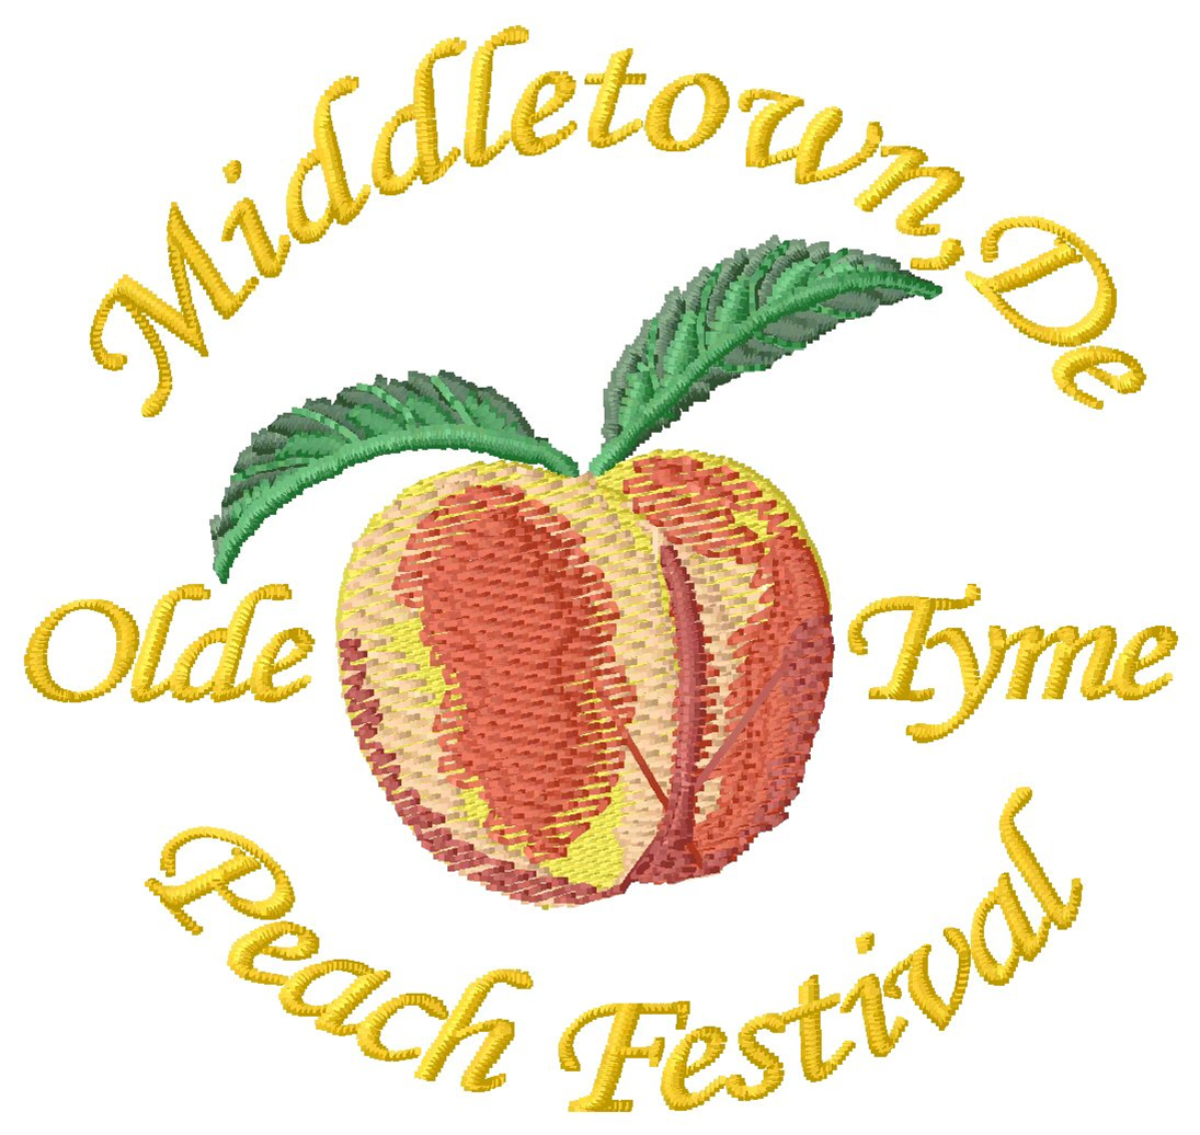 Middletown Olde-Tyme Peach Festival